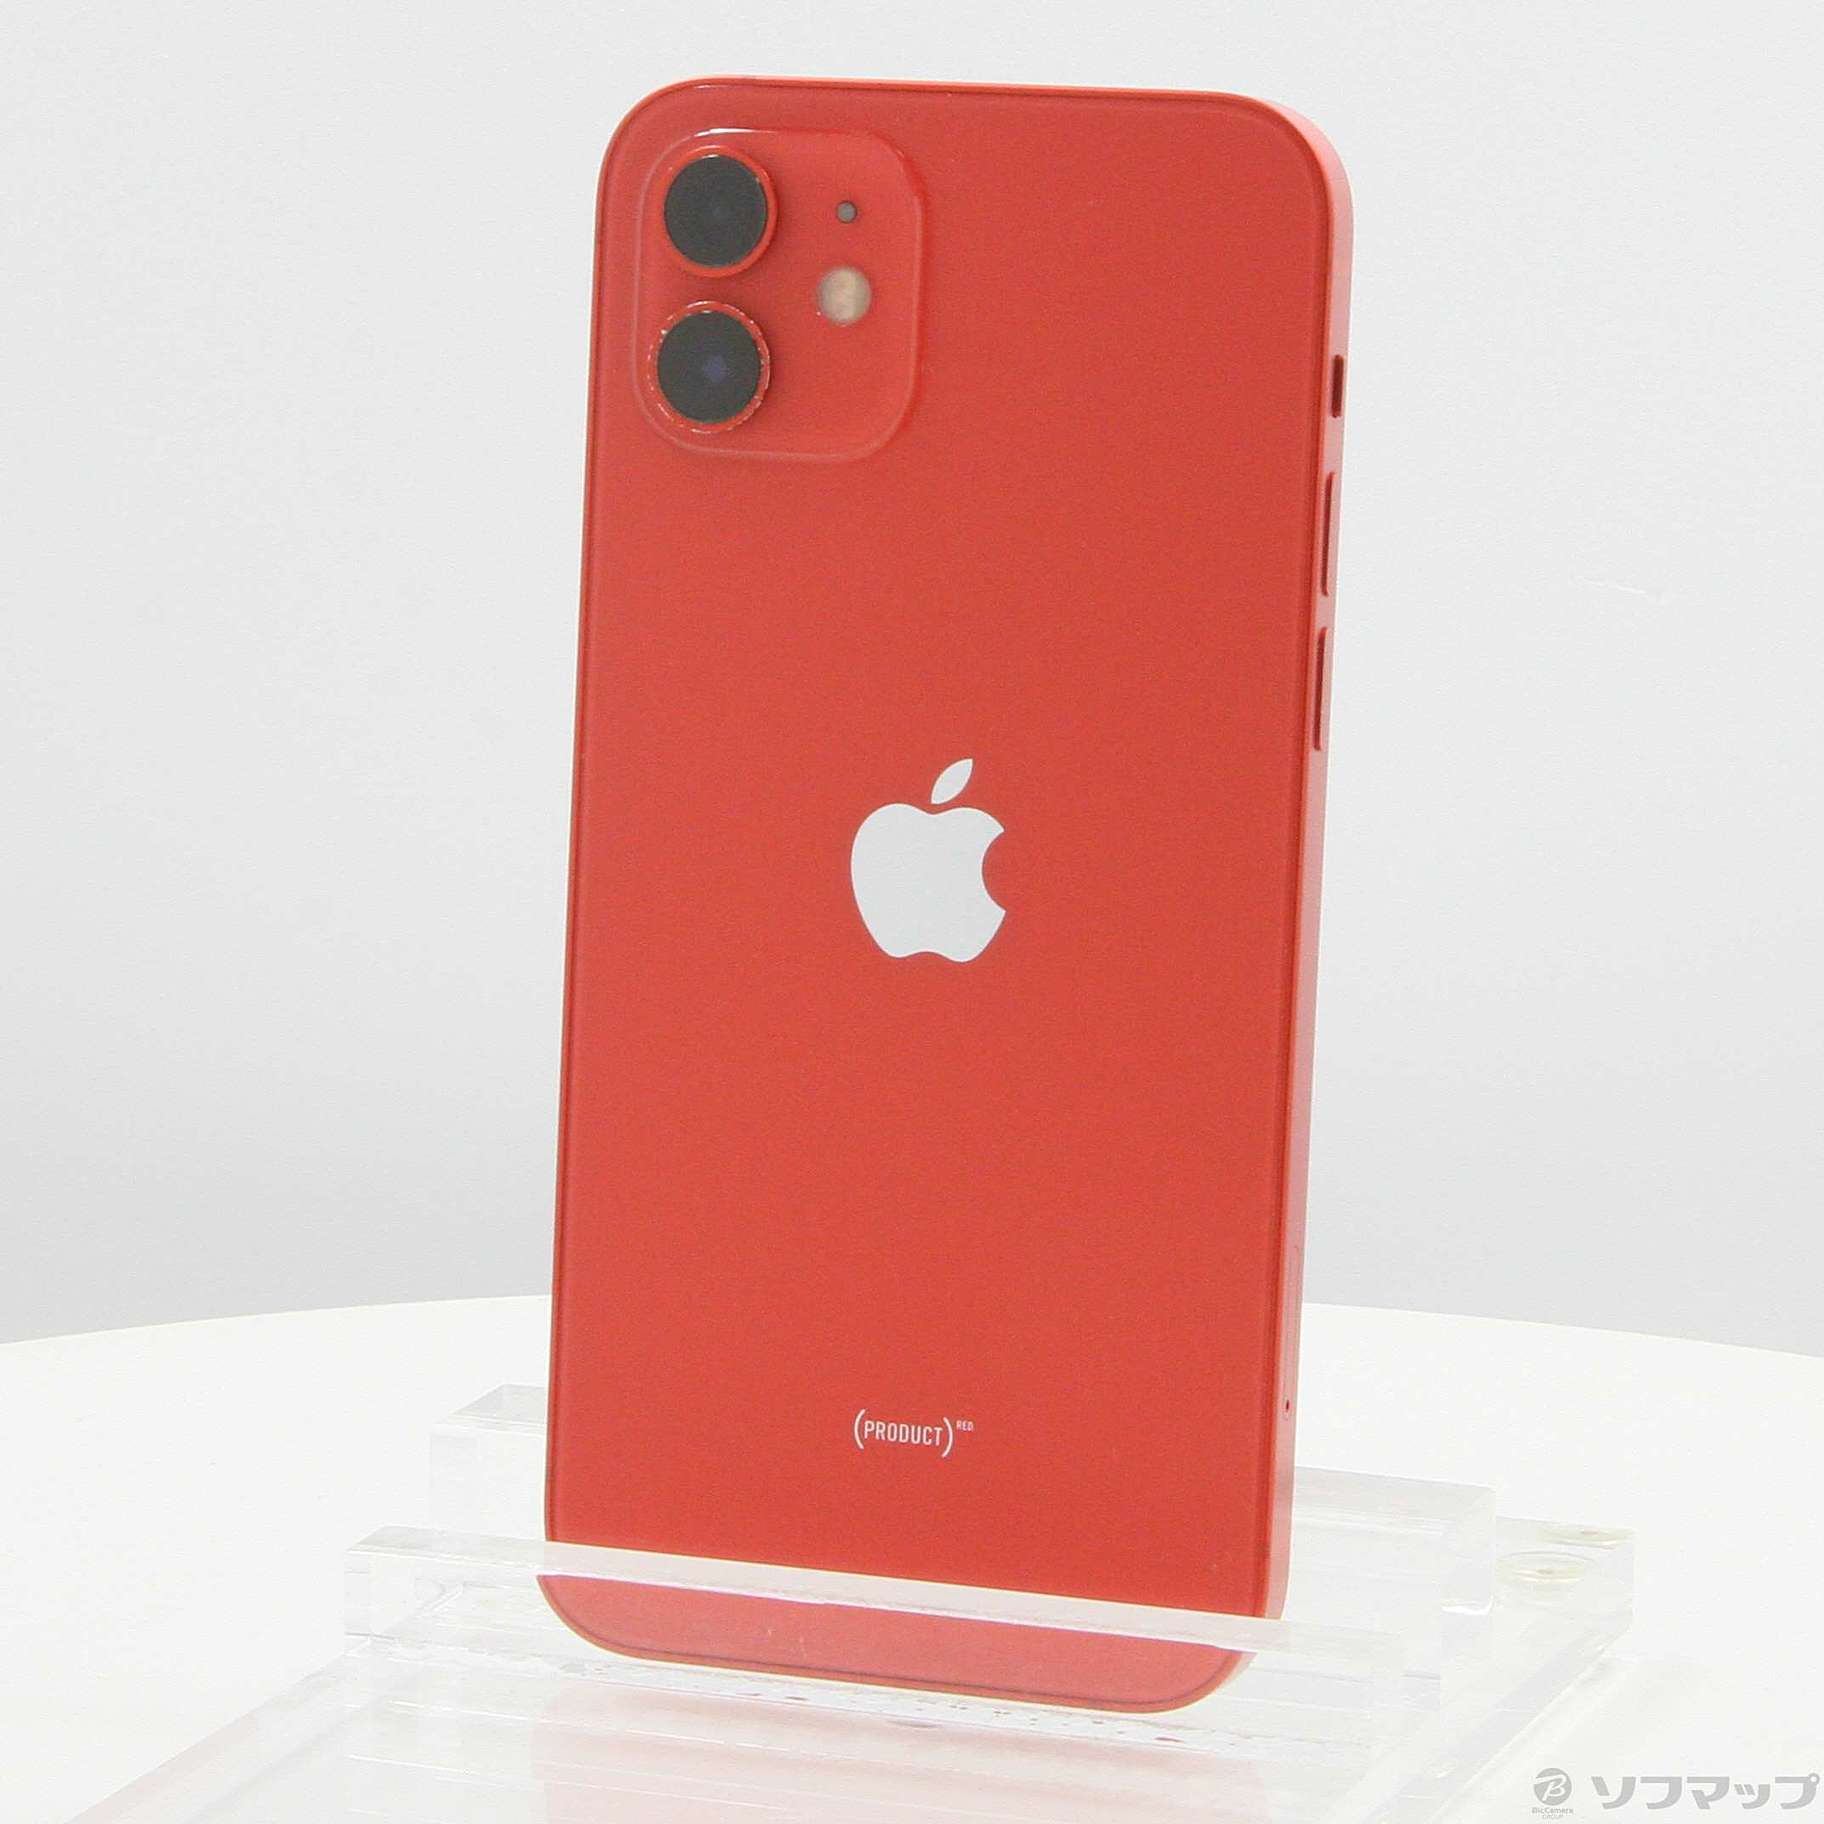 【新品未使用】iPhone 12 64GB レッド